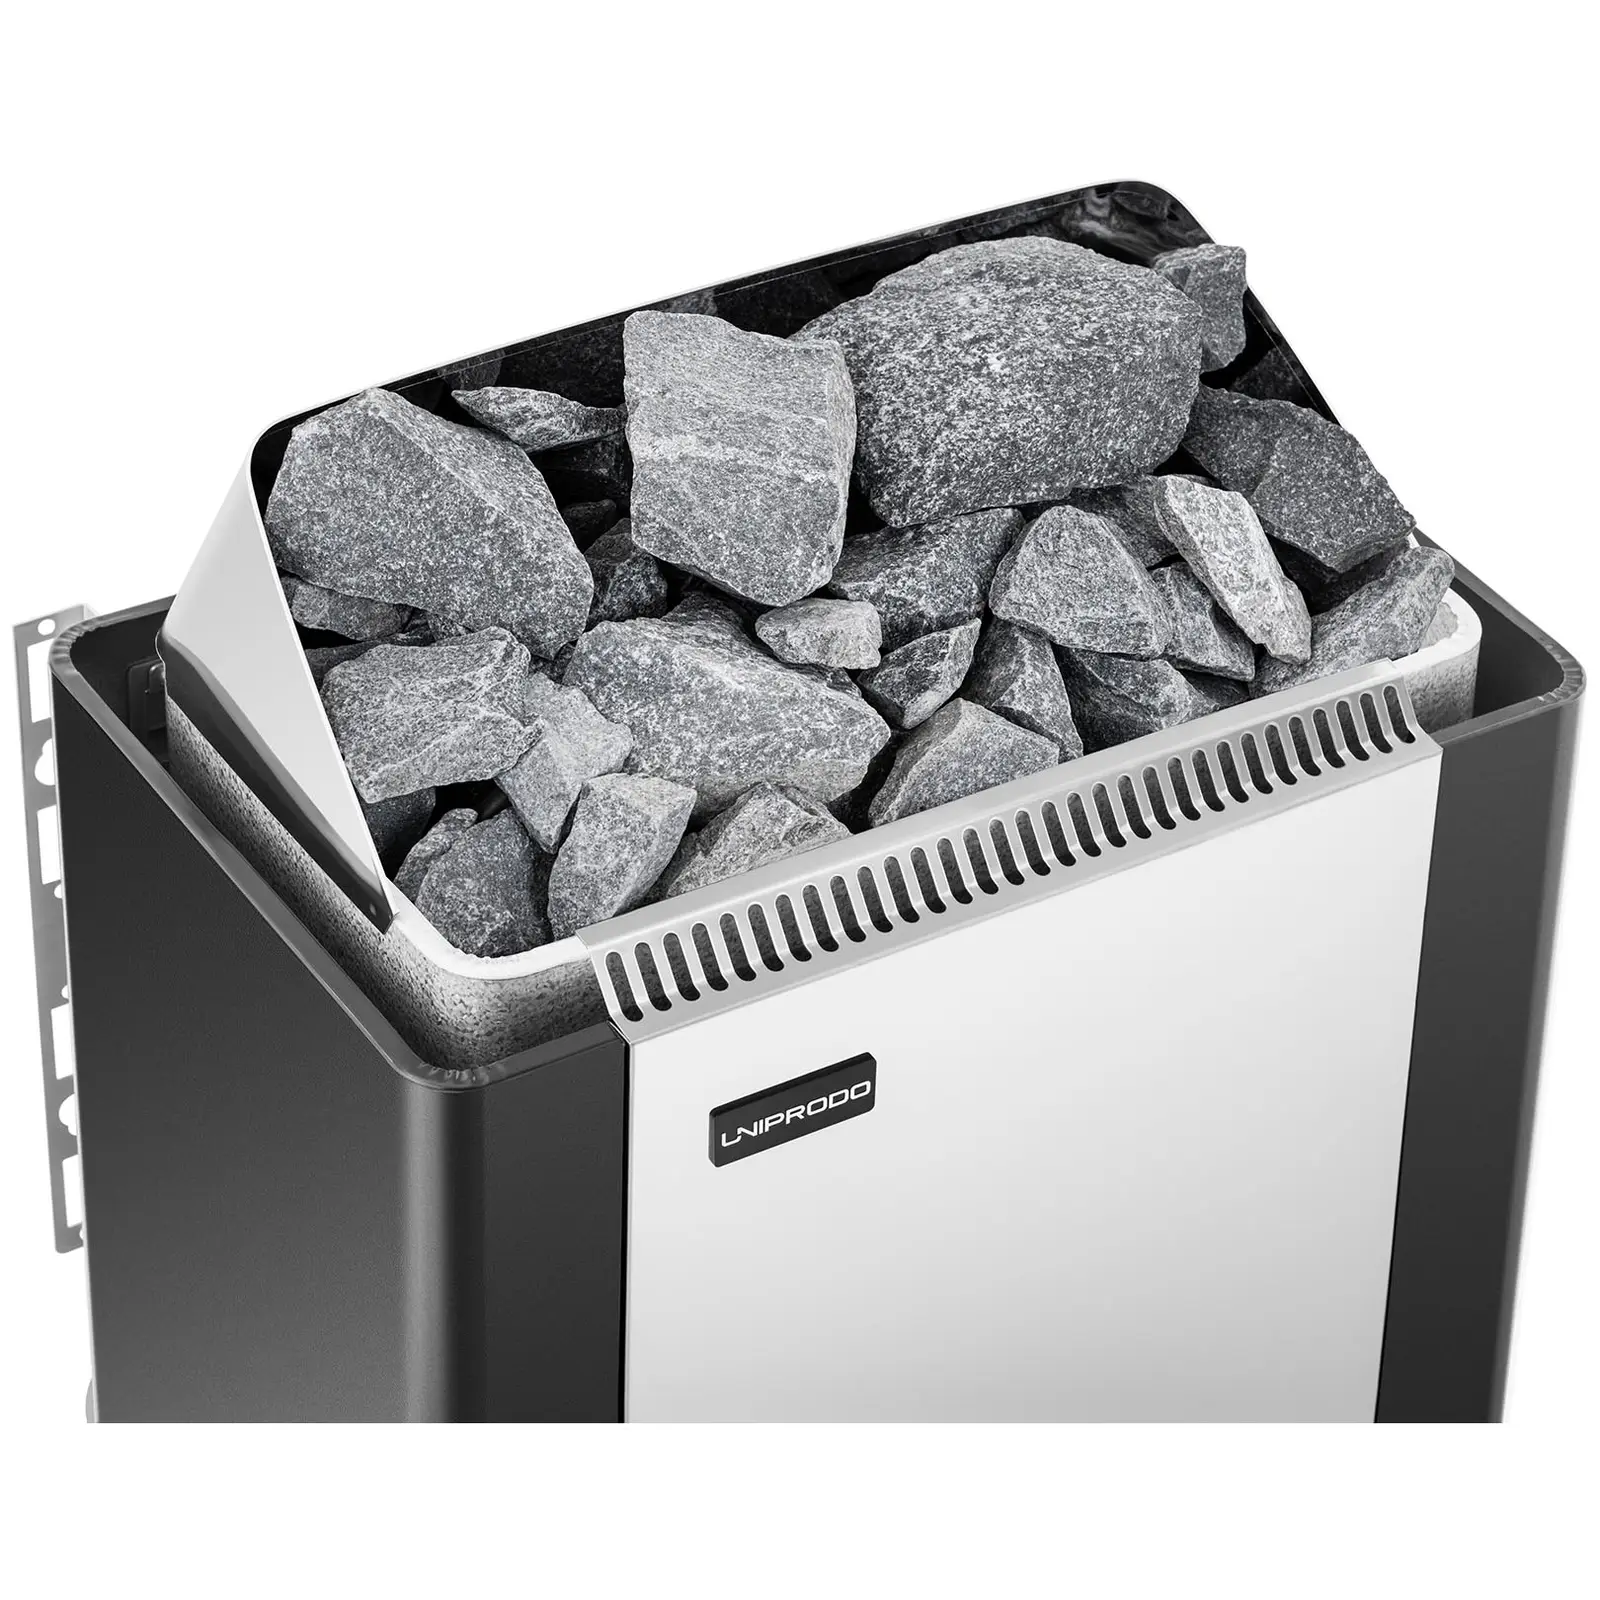 Saunová kamna - 8 kW - 30 až 110 °C - kryt z ušlechtilé oceli